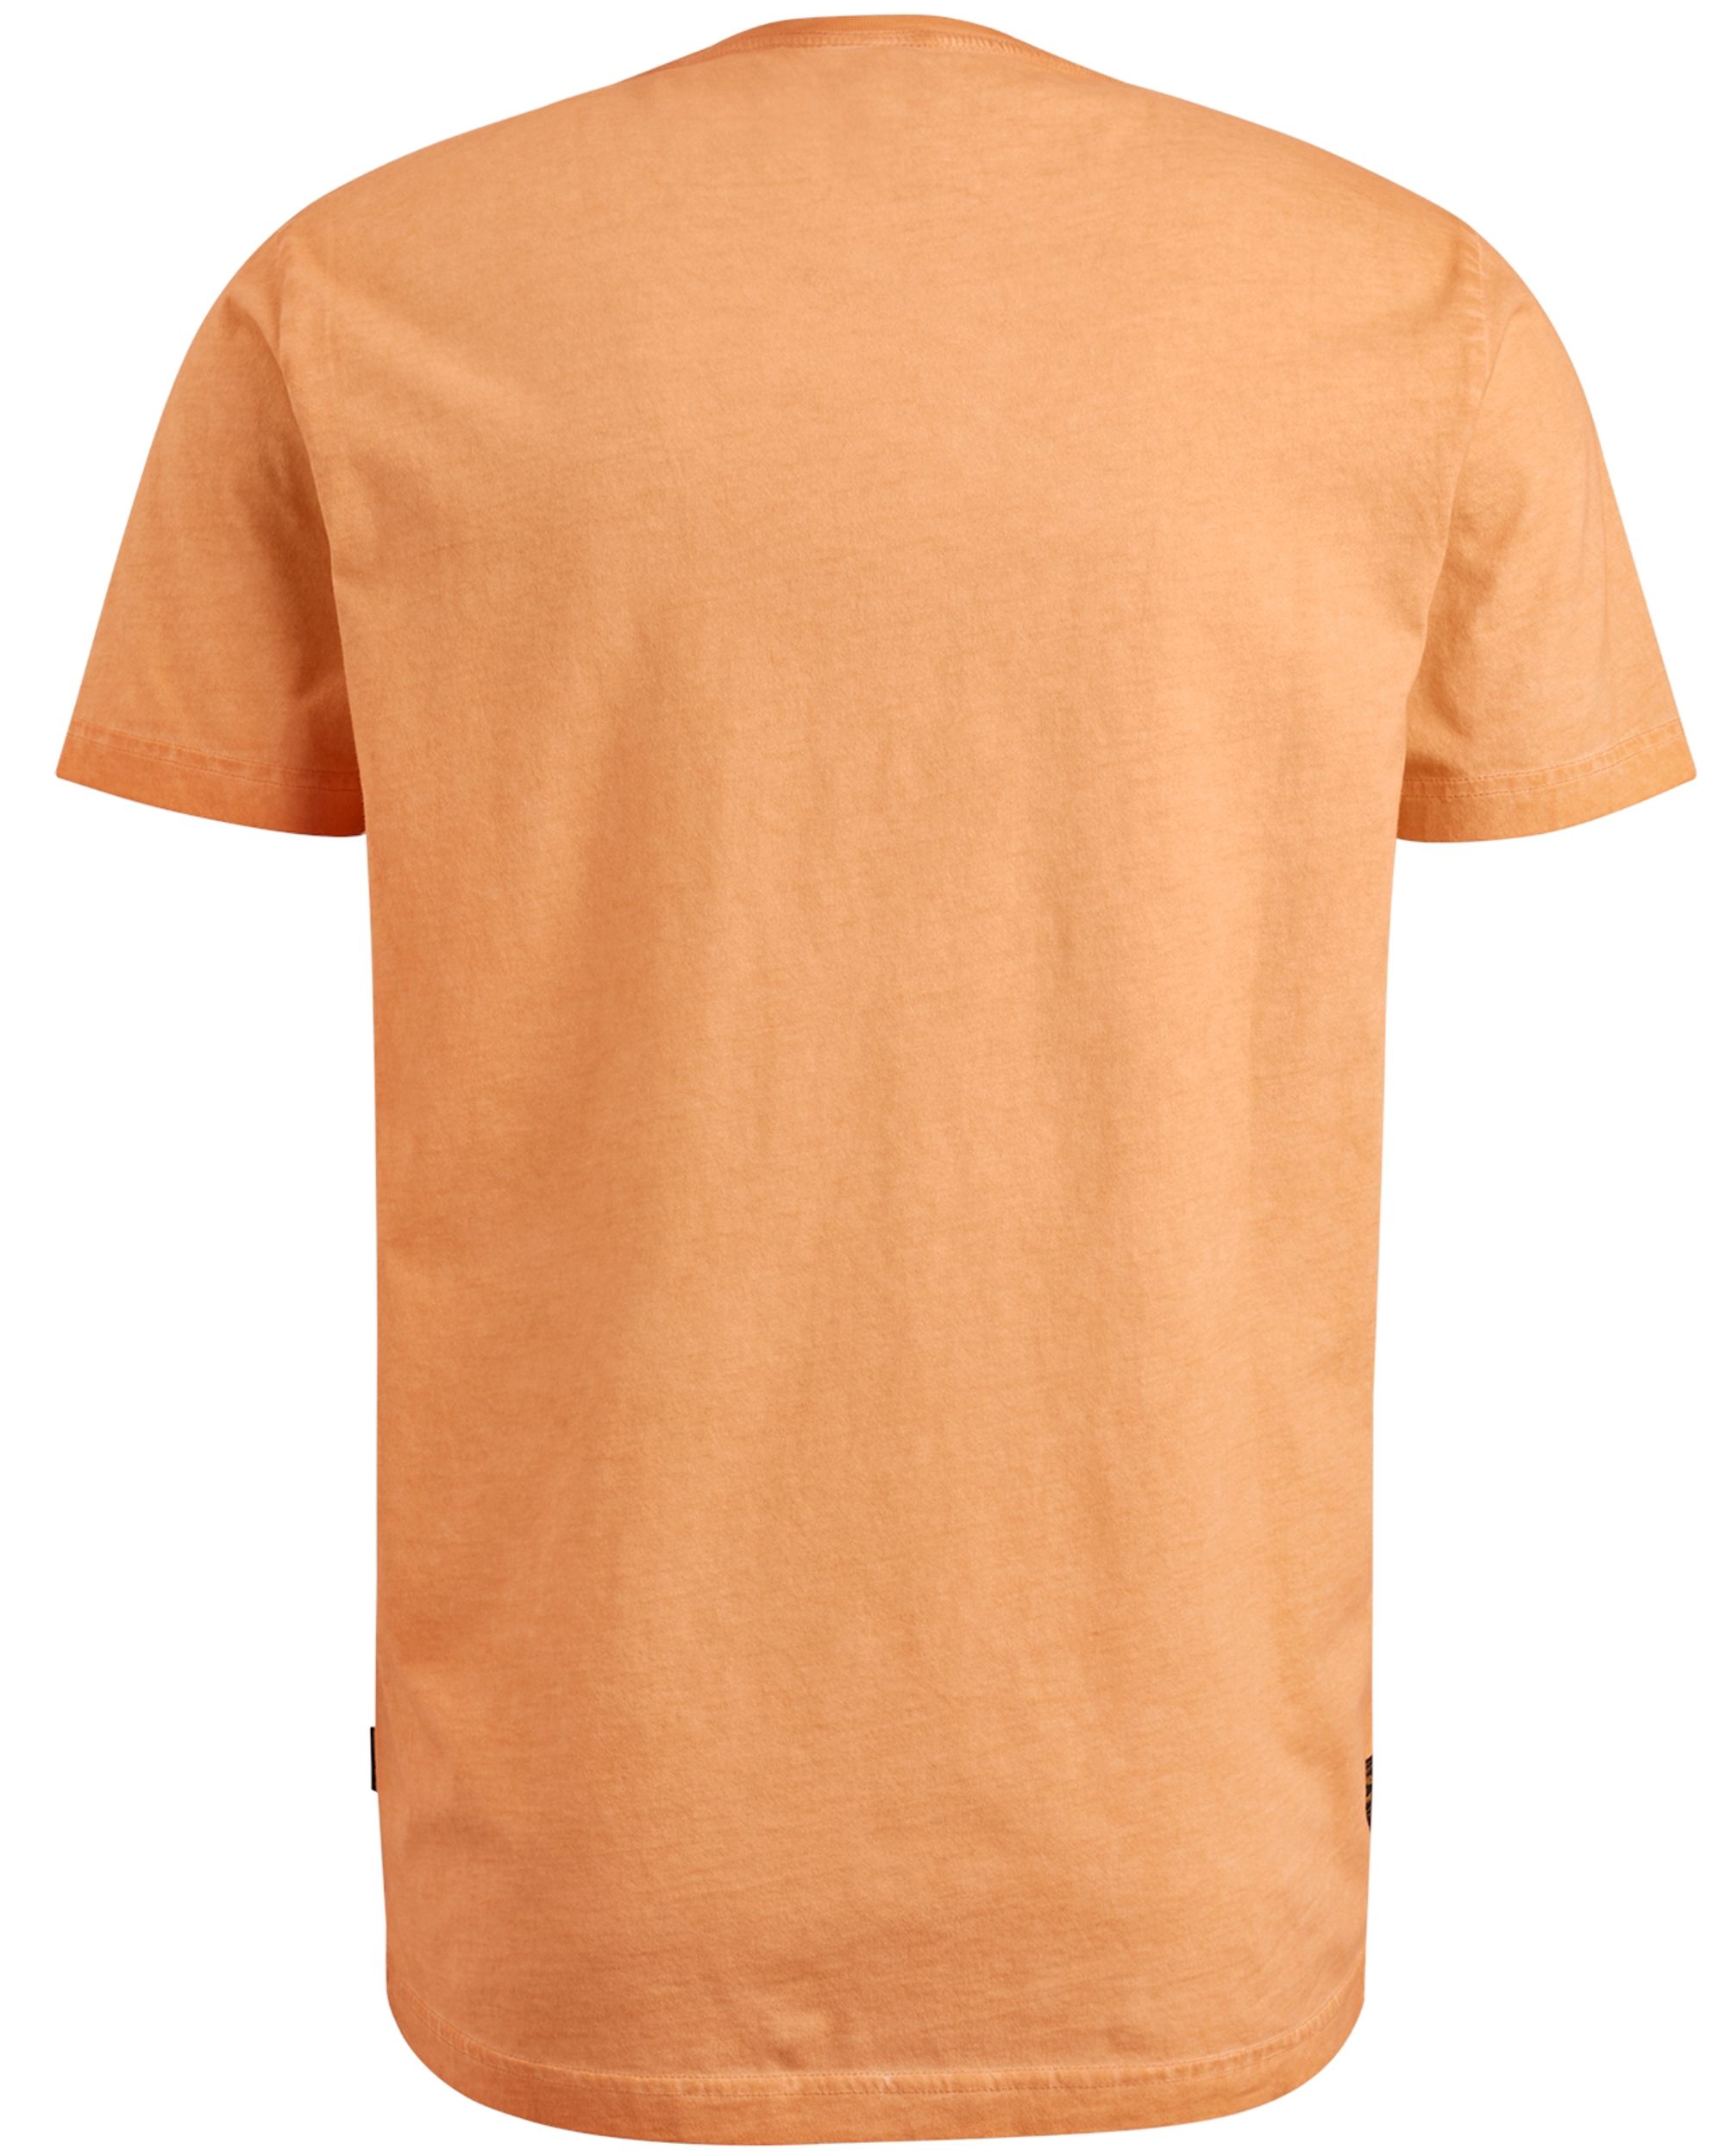 PME Legend T-shirt KM Oranje 093647-001-L